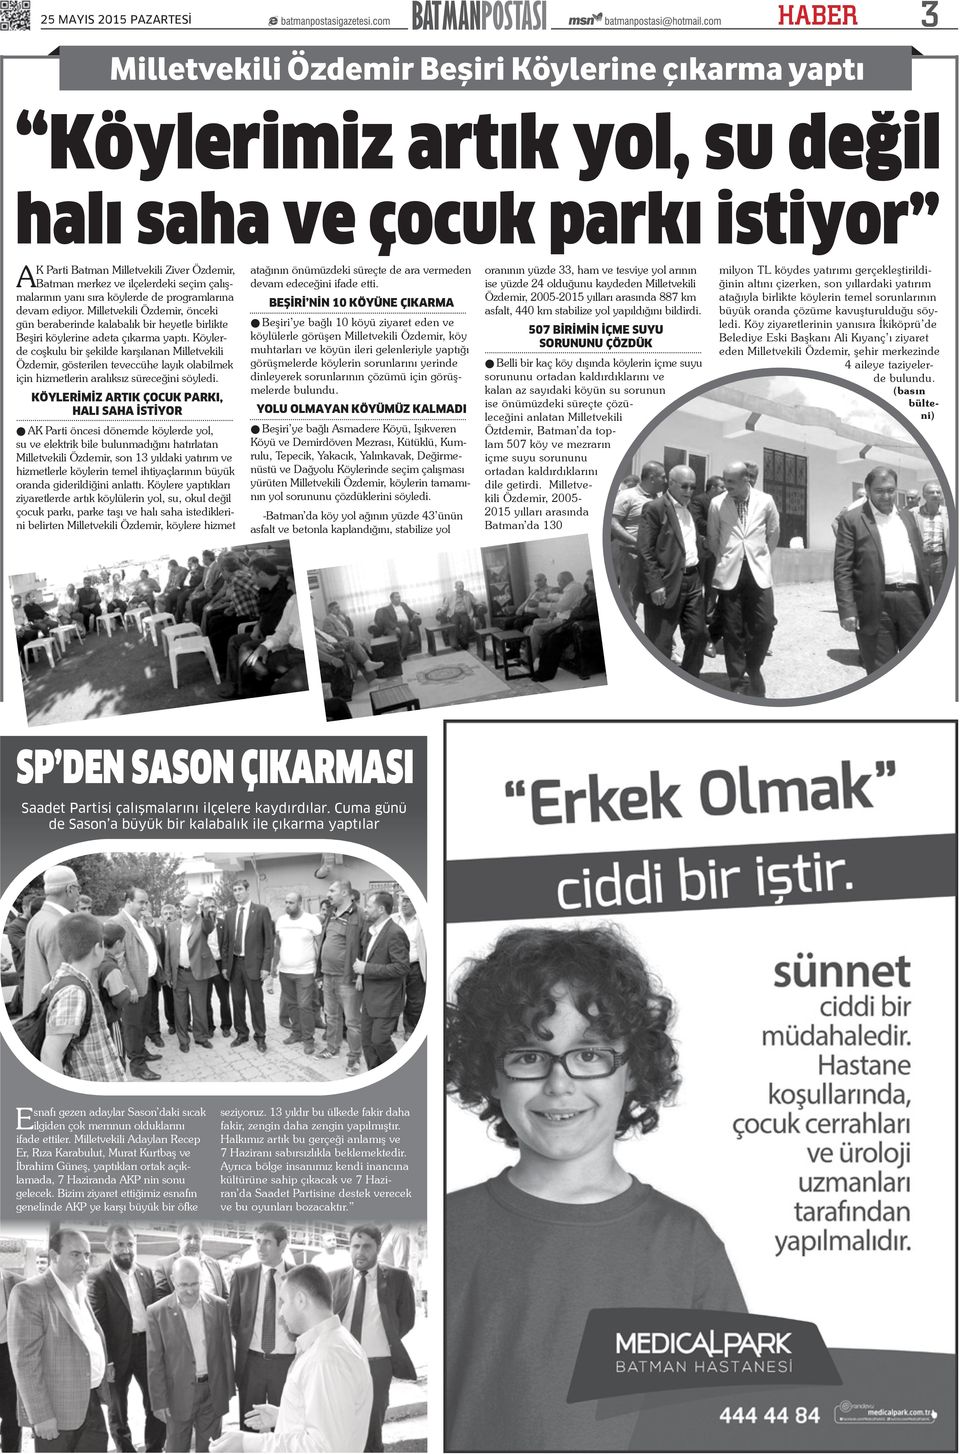 Köylerde coşkulu bir şekilde karşılanan Milletvekili Özdemir, gösterilen teveccühe layık olabilmek için hizmetlerin aralıksız süreceğini söyledi.